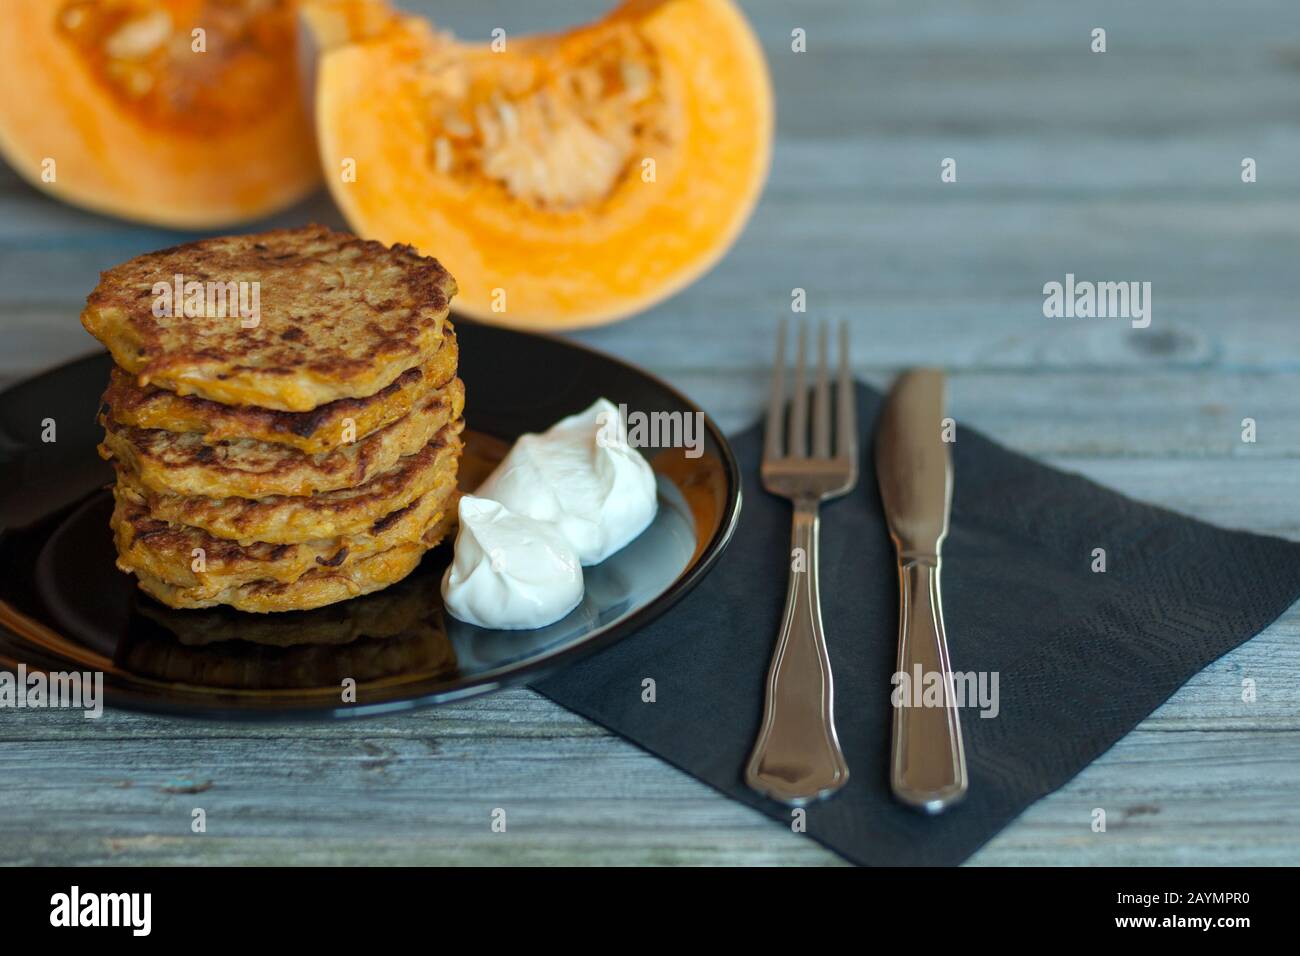 Pfannkuchen mit natürlichem Yougurt auf schwarzem Teller, Gabel, Messer, PapierServiette serviert auf grauem Holztisch, geschnittene Stücke und orangefarbener Kürbis auf dem Hintergrund Stockfoto